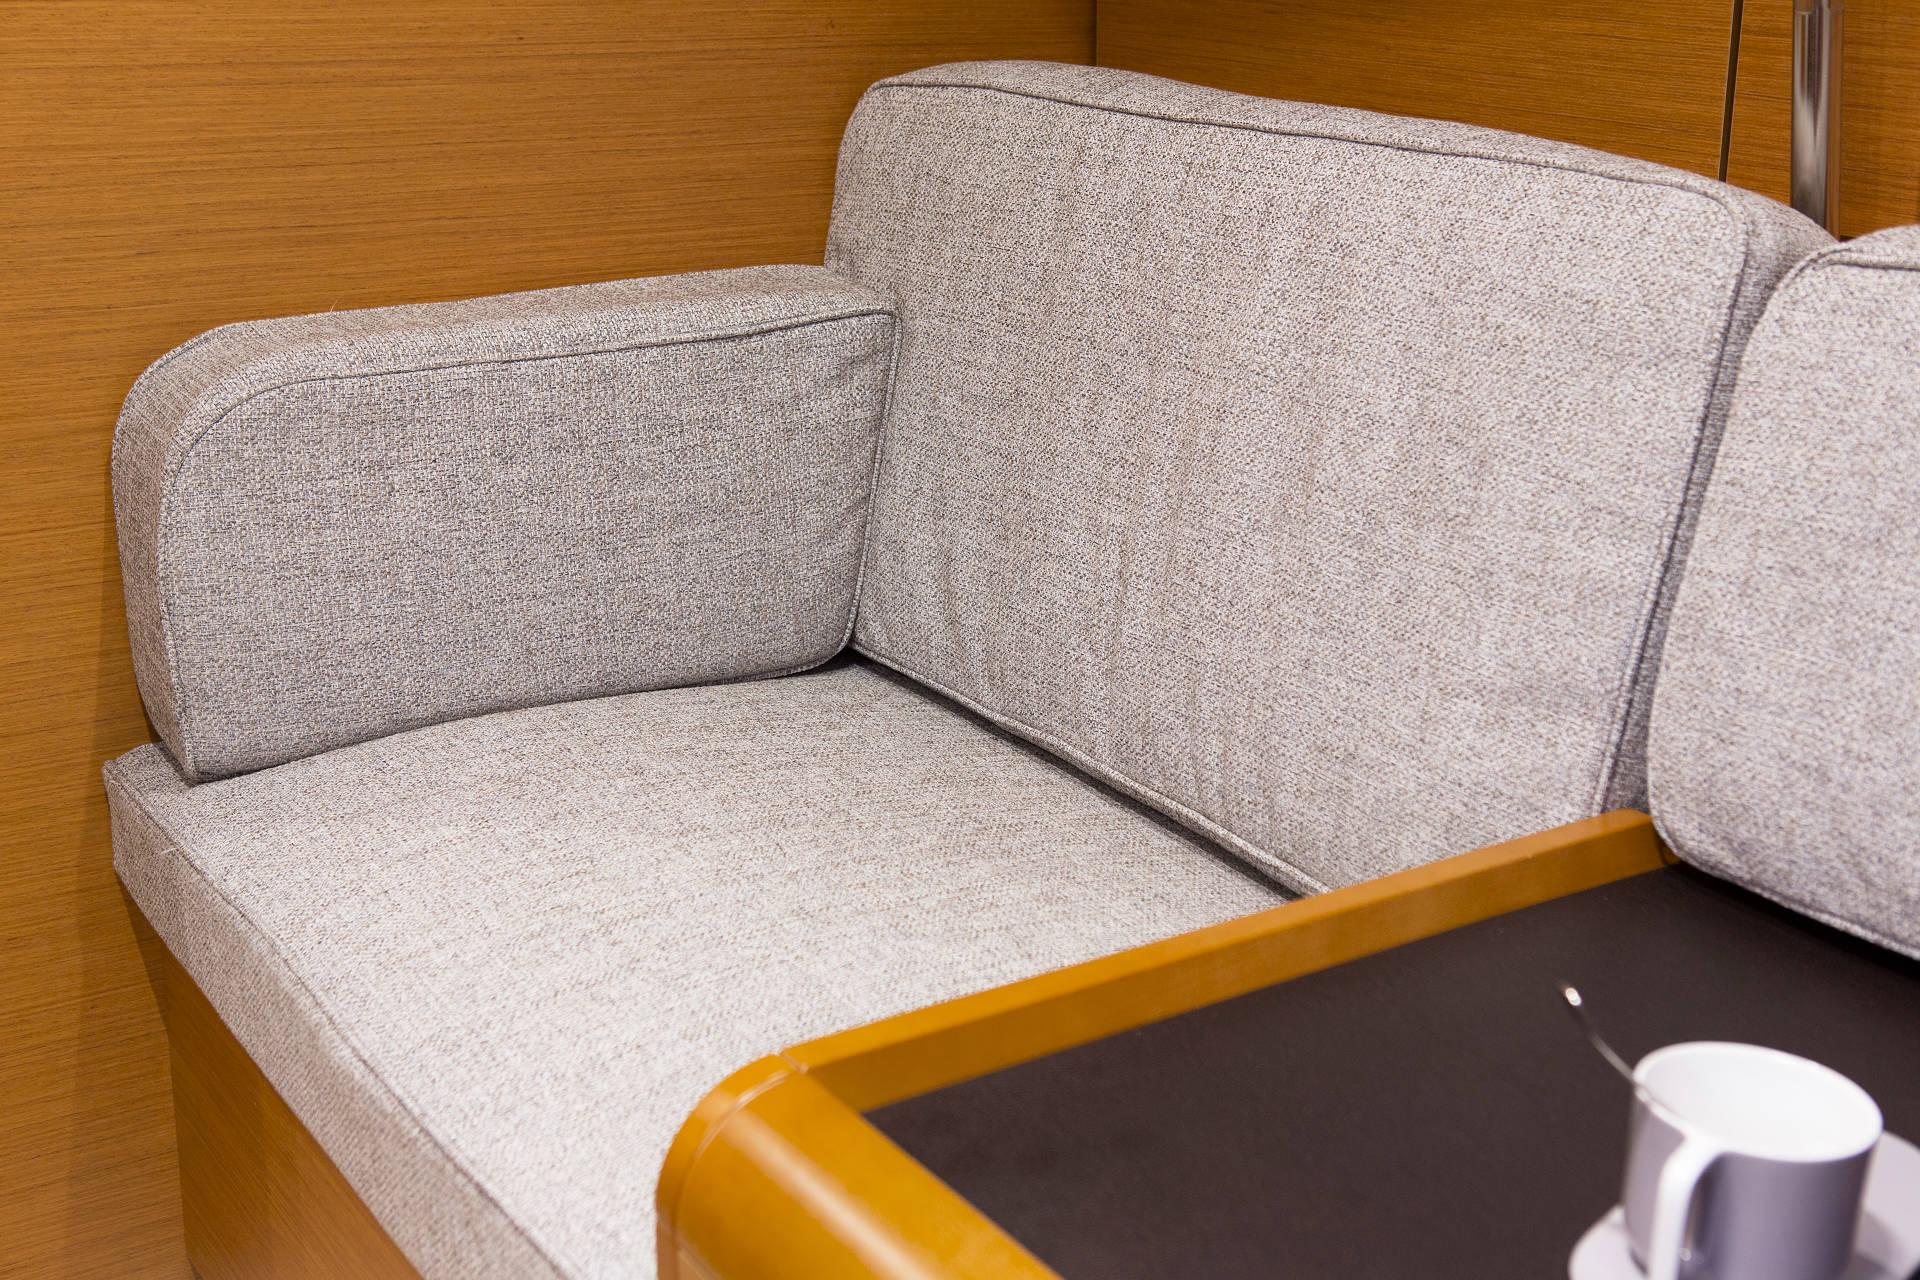 Ein modernes graues Stoffsofa mit Holzarmlehne, platziert in einer gemütlichen Ecke neben einem kleinen Holztisch mit einer weißen Tasse auf einem Katamaran.